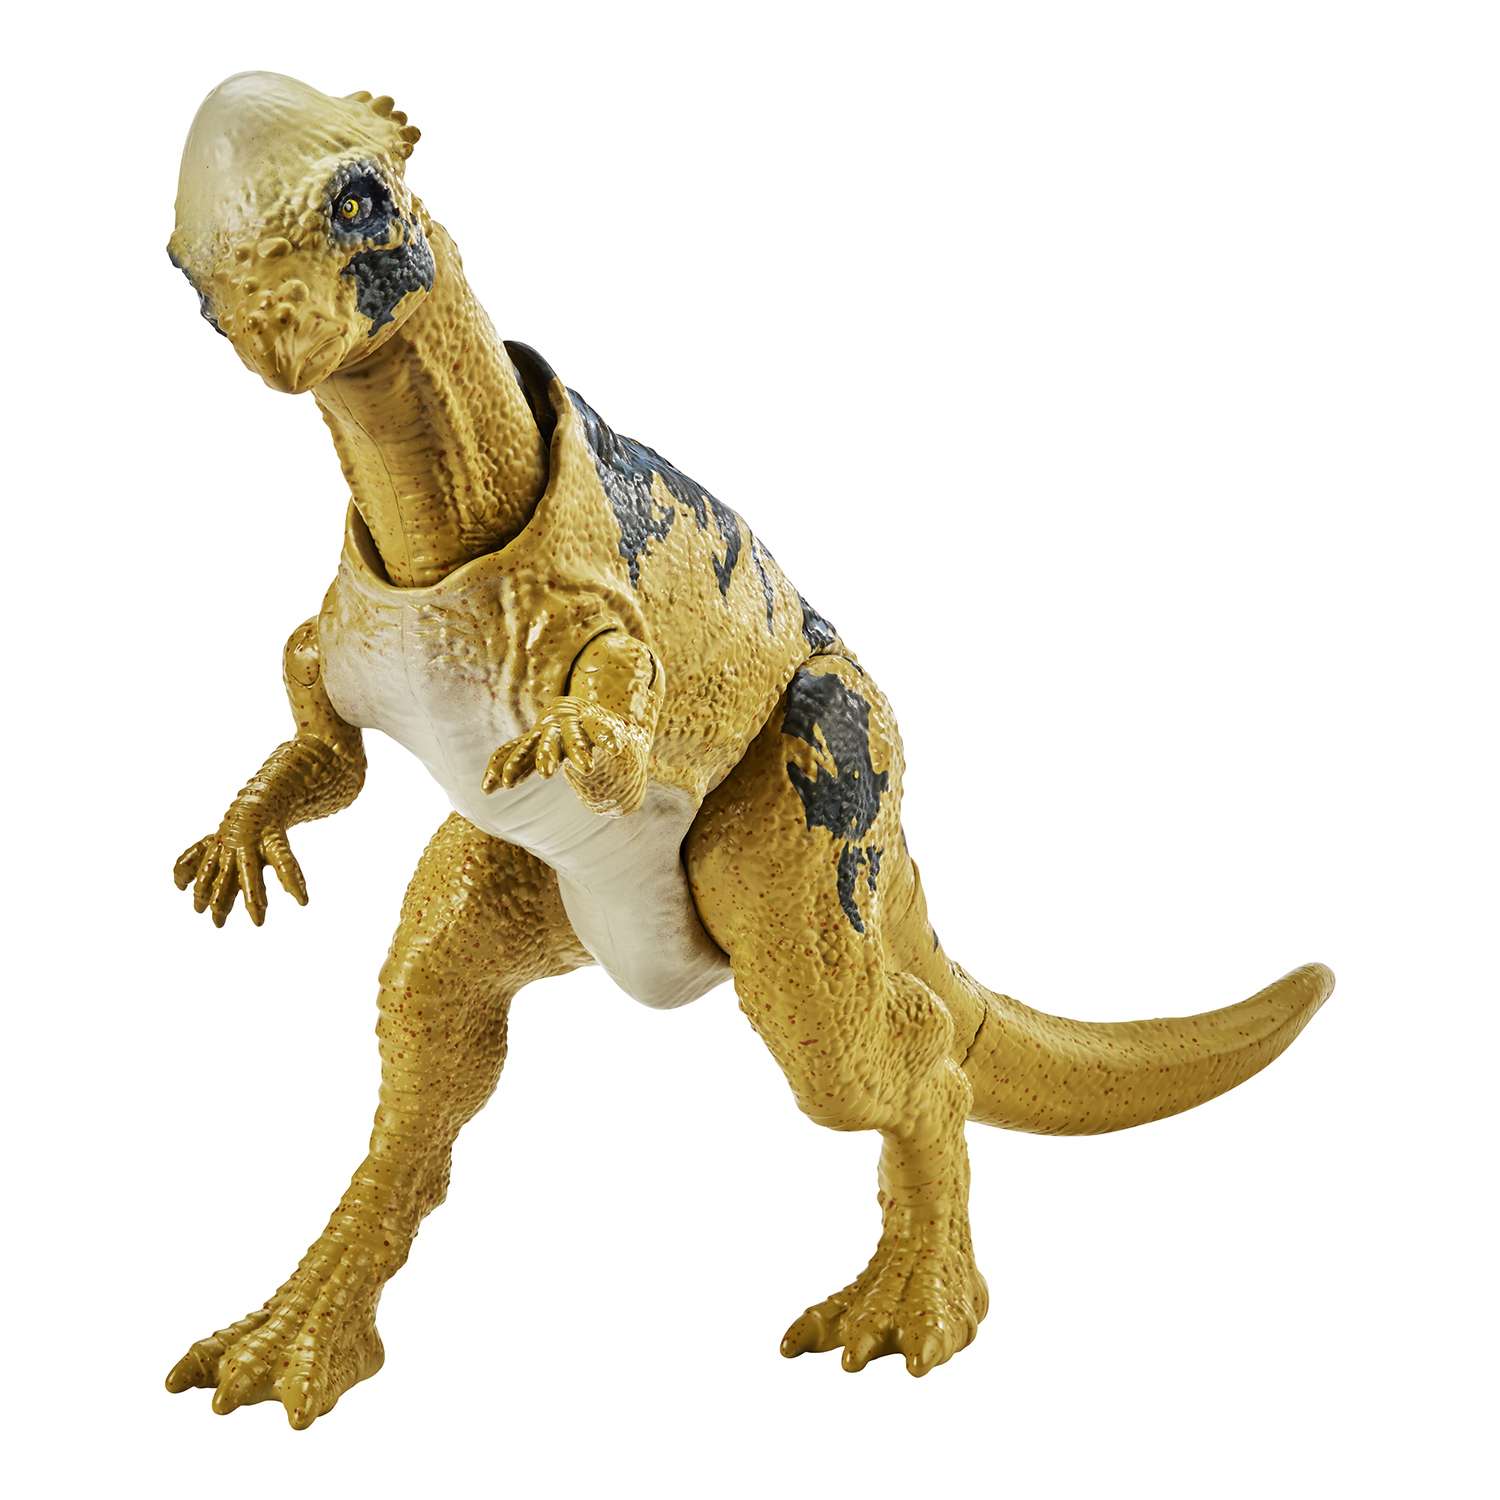 Мир динозавров игрушка. Пахицефалозавр игрушка парк Юрского периода. Пахицефалозавр Jurassic World. Игрушки мир Юрского периода Пахицефалозавр. Jurassic World игрушки Mattel Пахицефалозавр.